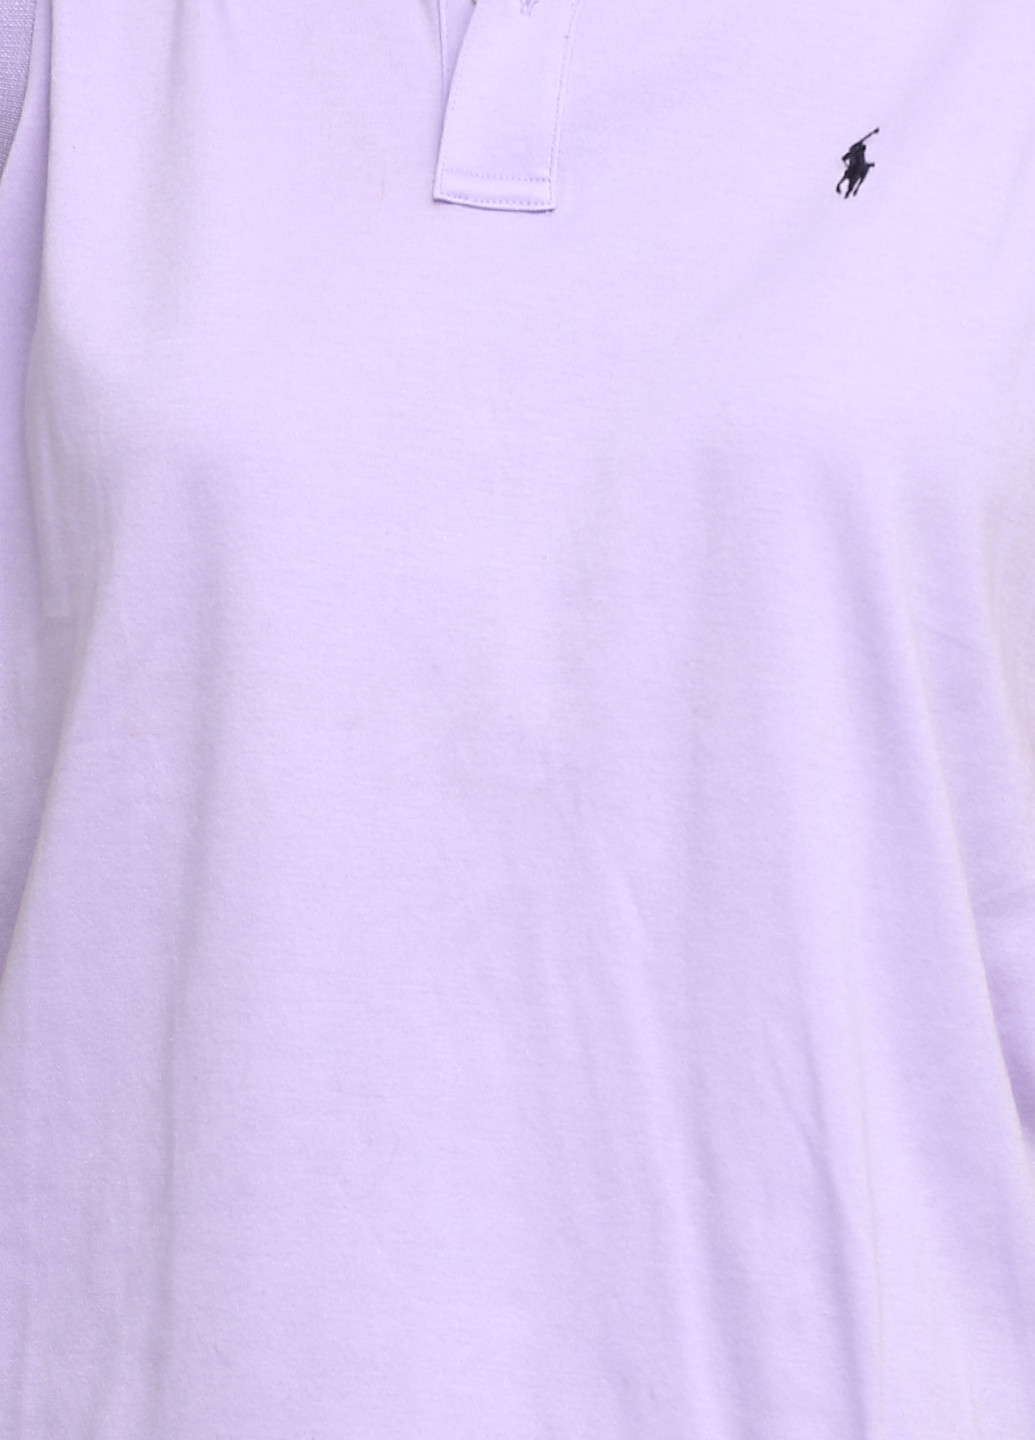 Сиреневая женская футболка-поло Ralph Lauren однотонная